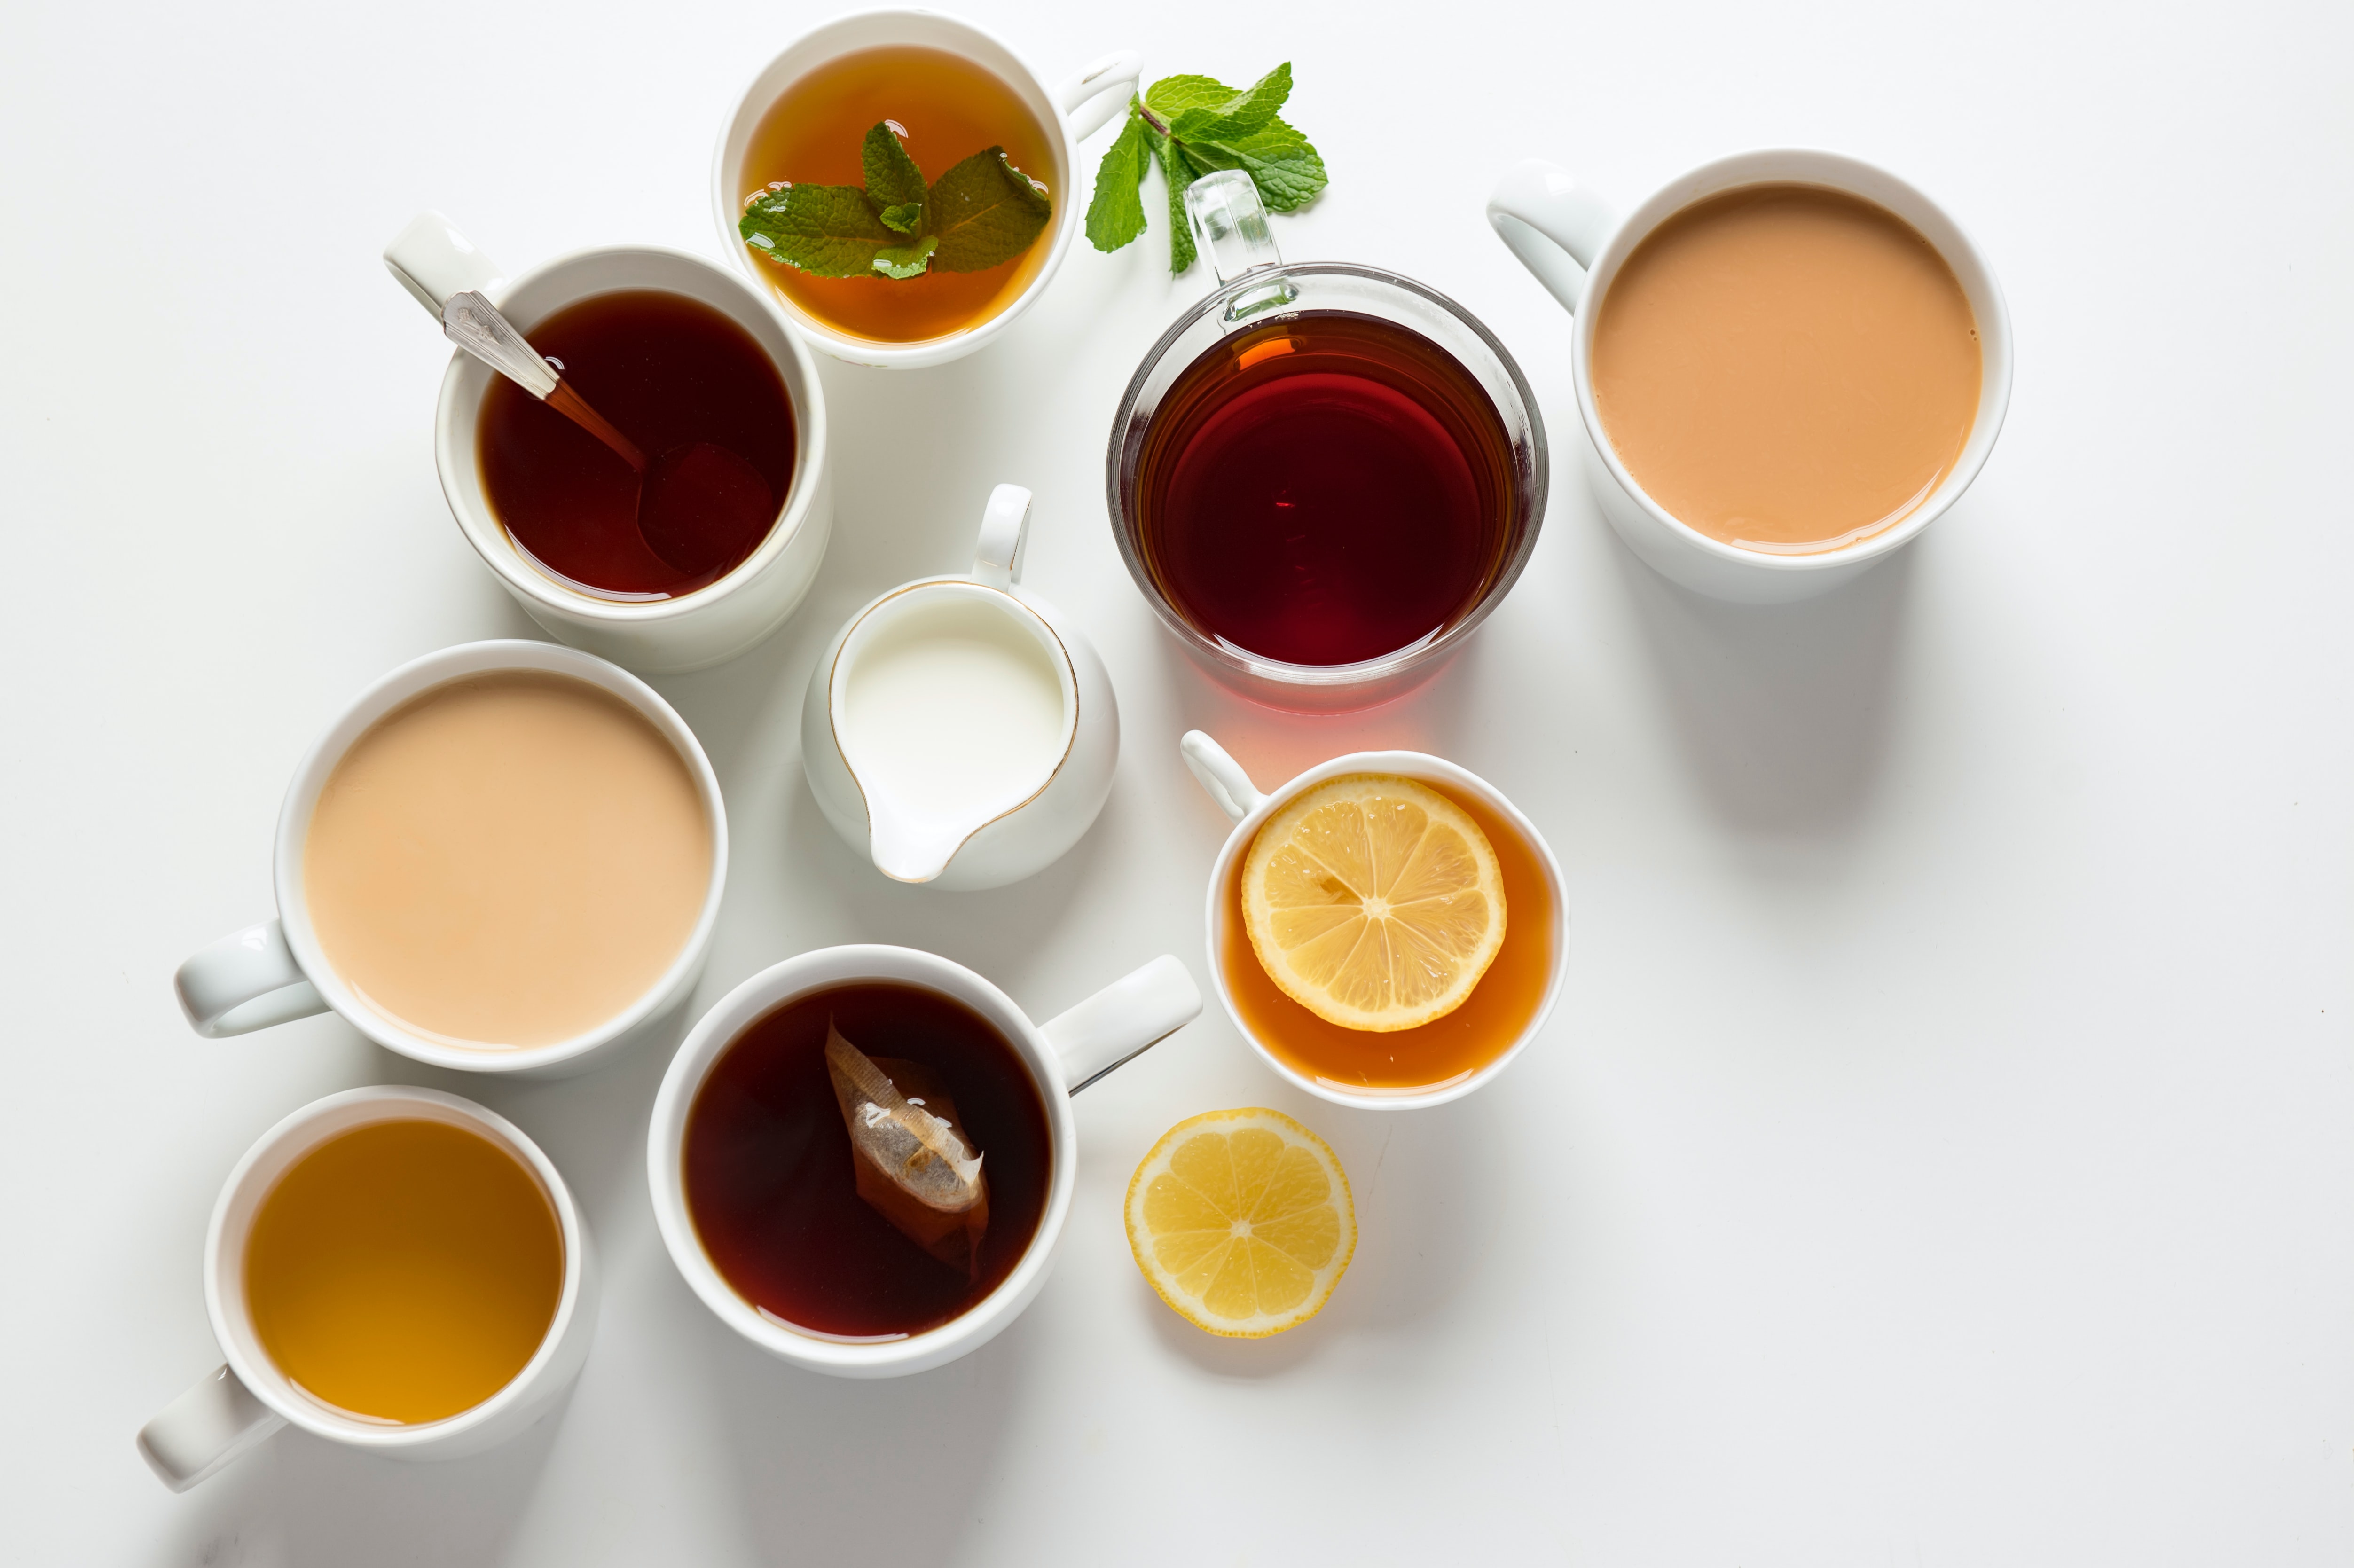 Čajomír fest 2020 - největší svátek čaje v Evropě